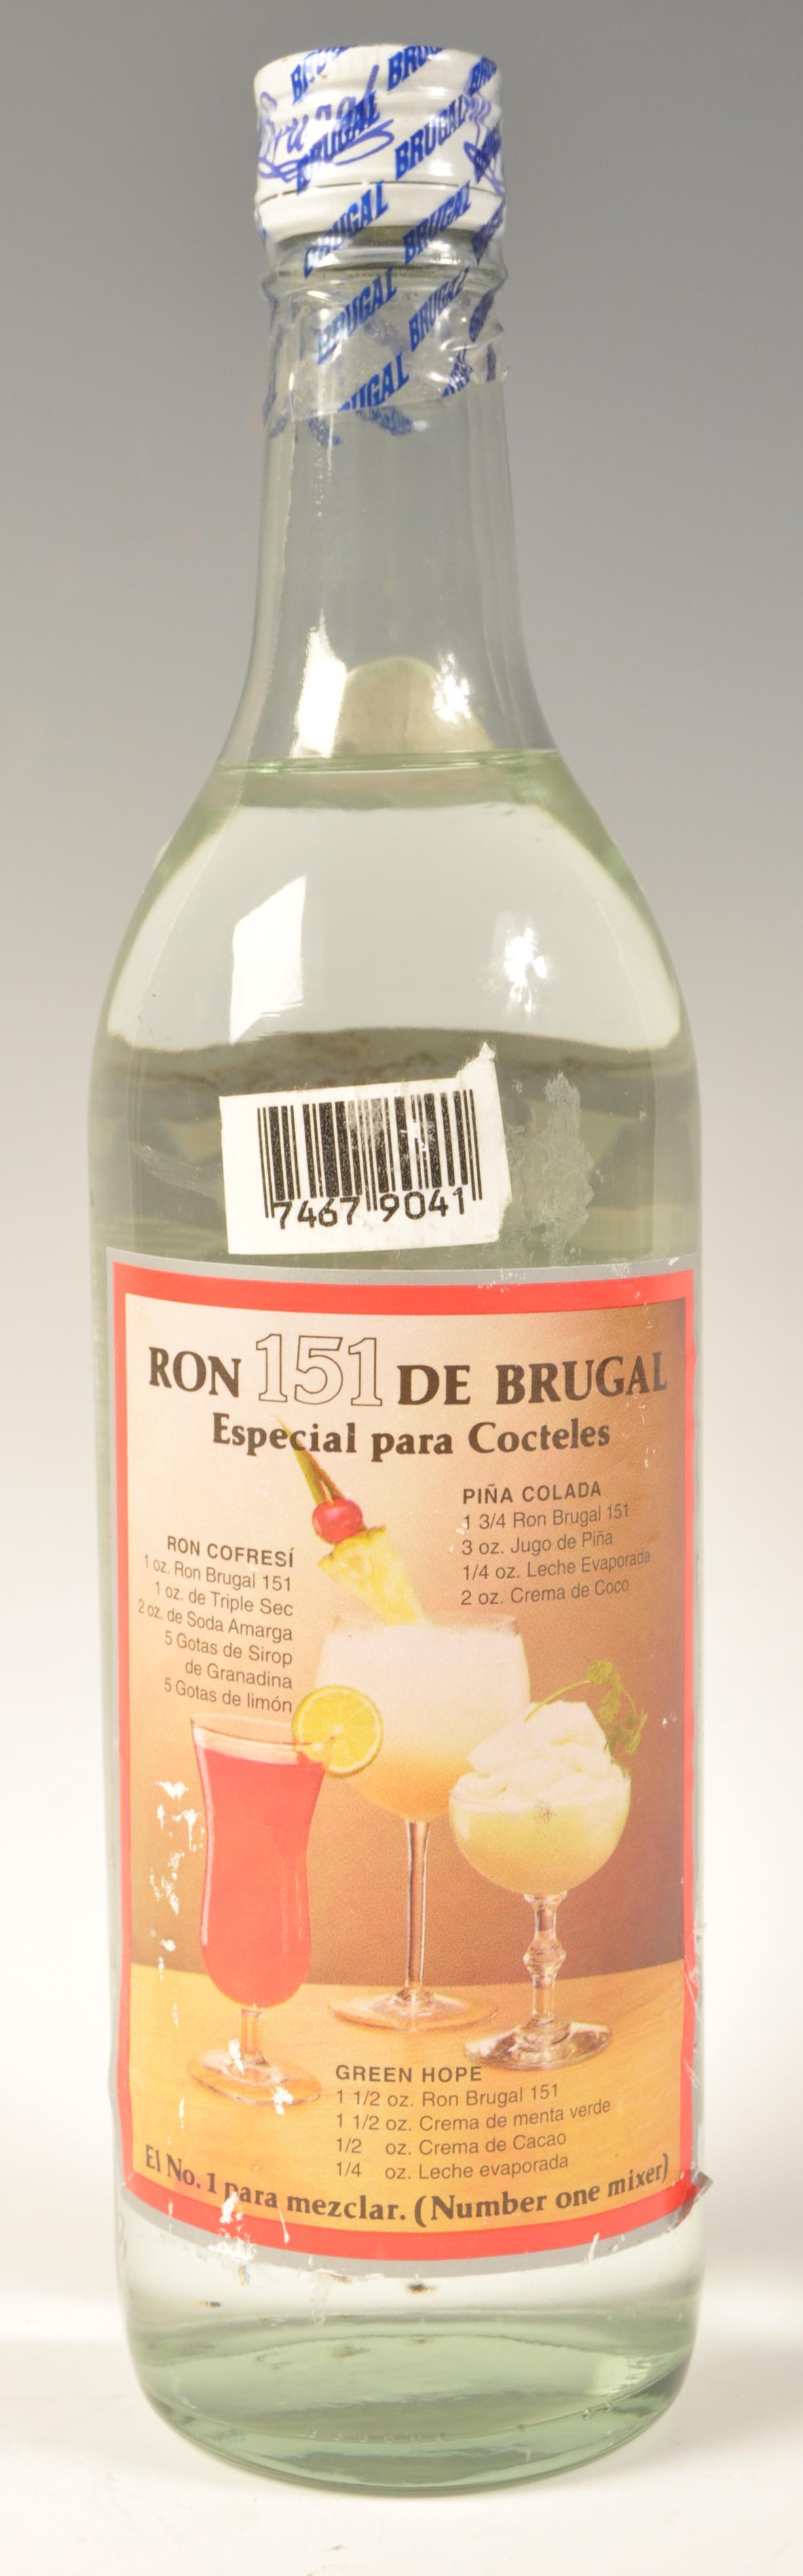 BRUGAL RON DOMINICANO 151 WHITE RUM - Bild 2 aus 4